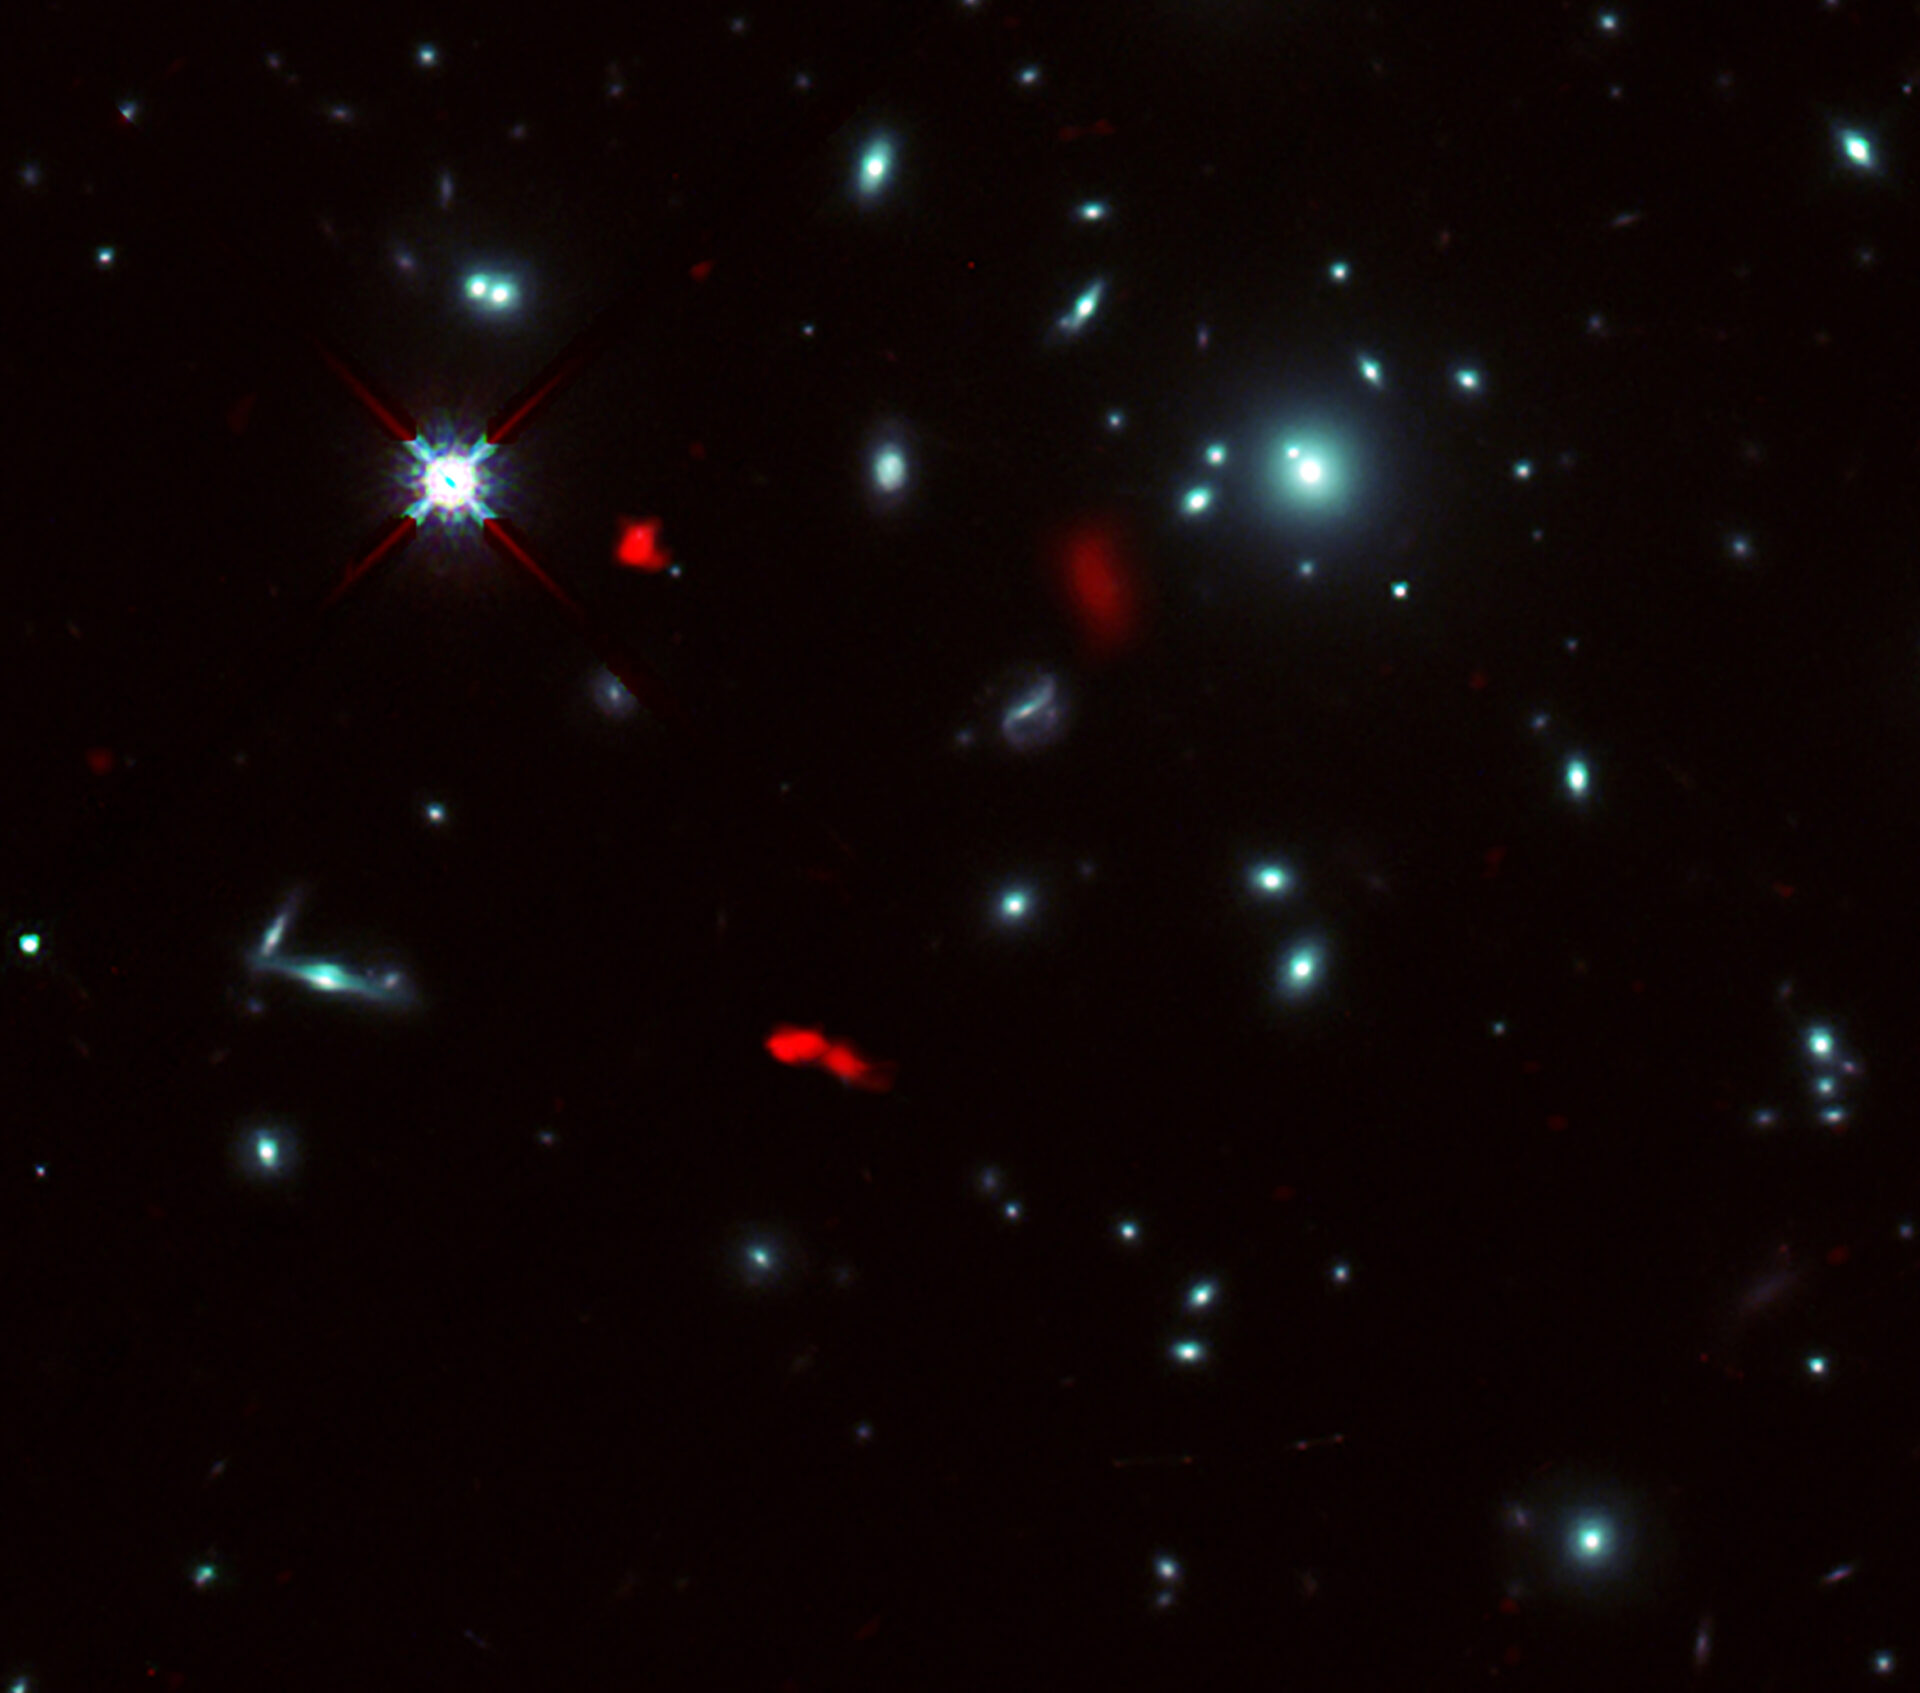 Imagen del cúmulo de galaxias RXCJ0600-2007 tomada por el telescopio espacial Hubble de la NASA/ESA combinada con imágenes de lente gravitacional de la lejana galaxia RXCJ0600-z6, situada a 12.400 millones de años luz de distancia, obtenidas con ALMA (en rojo). Debido al efecto de lente gravitacional producido por el cúmulo de galaxias, la imagen de RXCJ0600-z6 se vio intensificada y amplificada, y parece estar dividida al menos en tres partes. Créditos: ALMA (ESO/NAOJ/NRAO), Fujimoto et al., telescopio espacial Hubble de la NASA/ESA